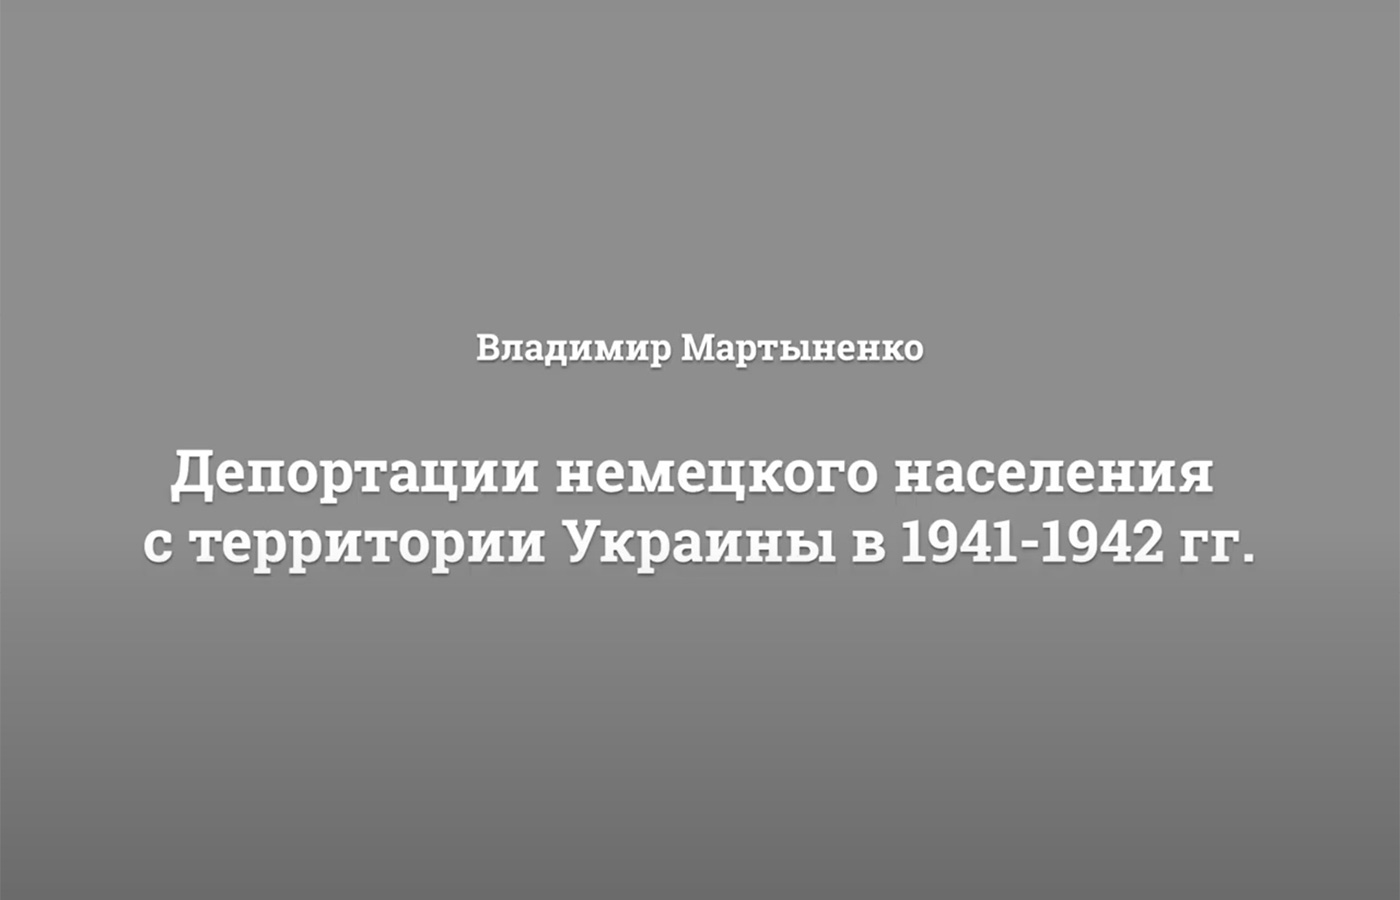 СМОТРИТЕ ВИДЕО: Лекция Владимира Мартыненко «Депортации немецкого населения с территории Украины в 1941-1942 гг».